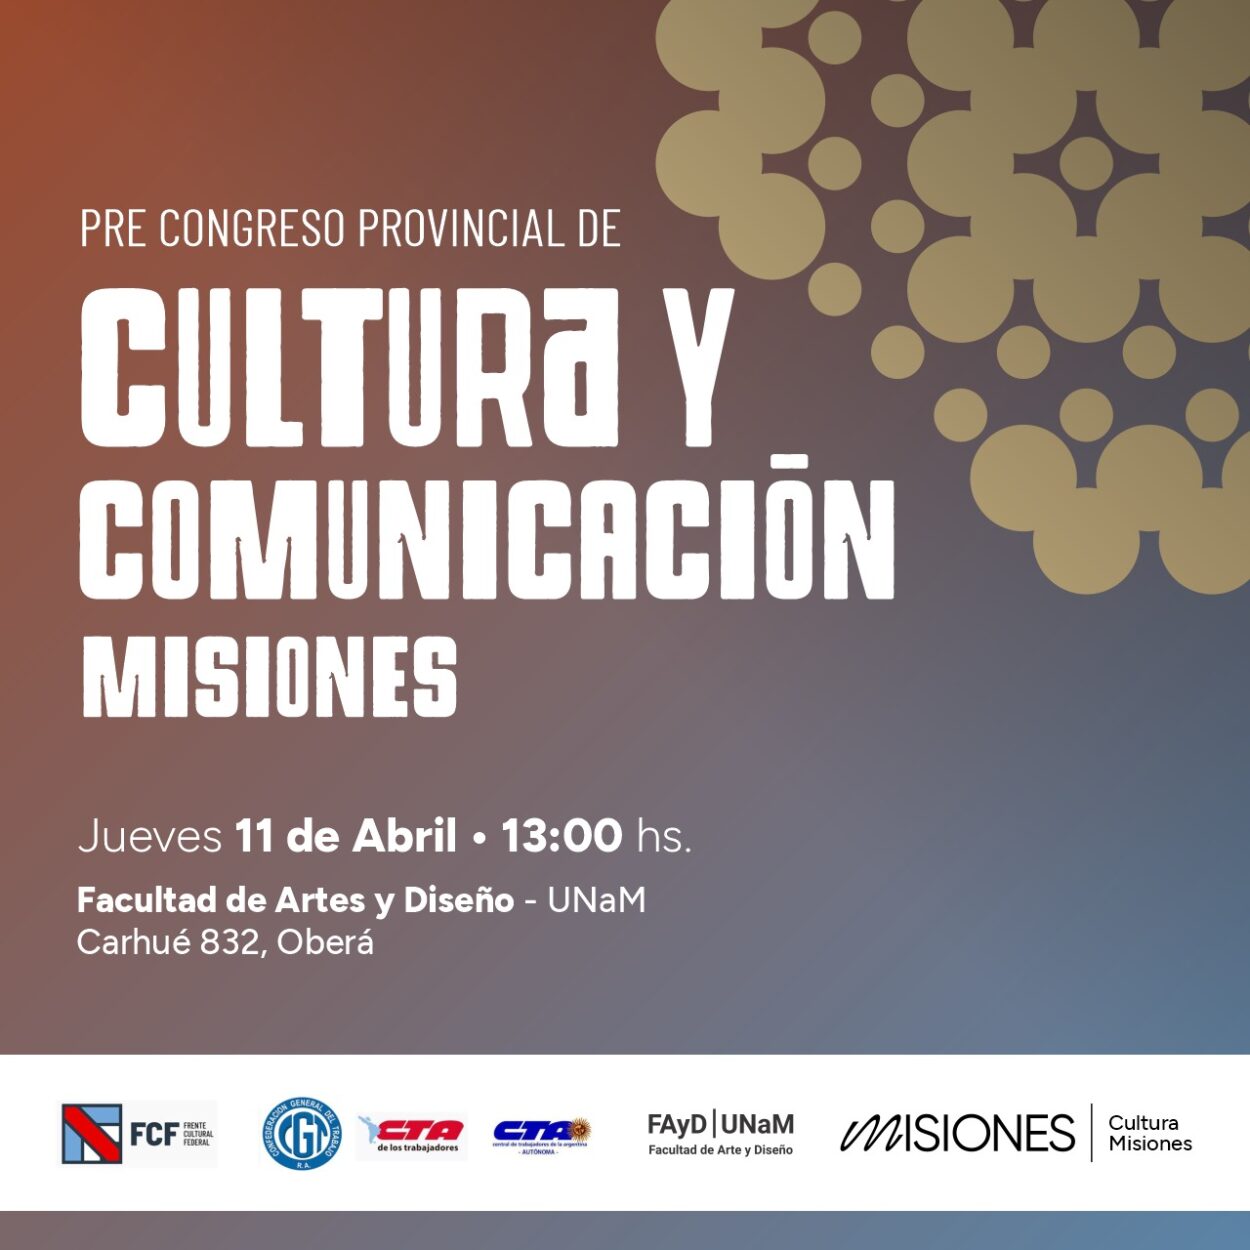 Pre Congreso de Cultura y Comunicación Misiones imagen-59